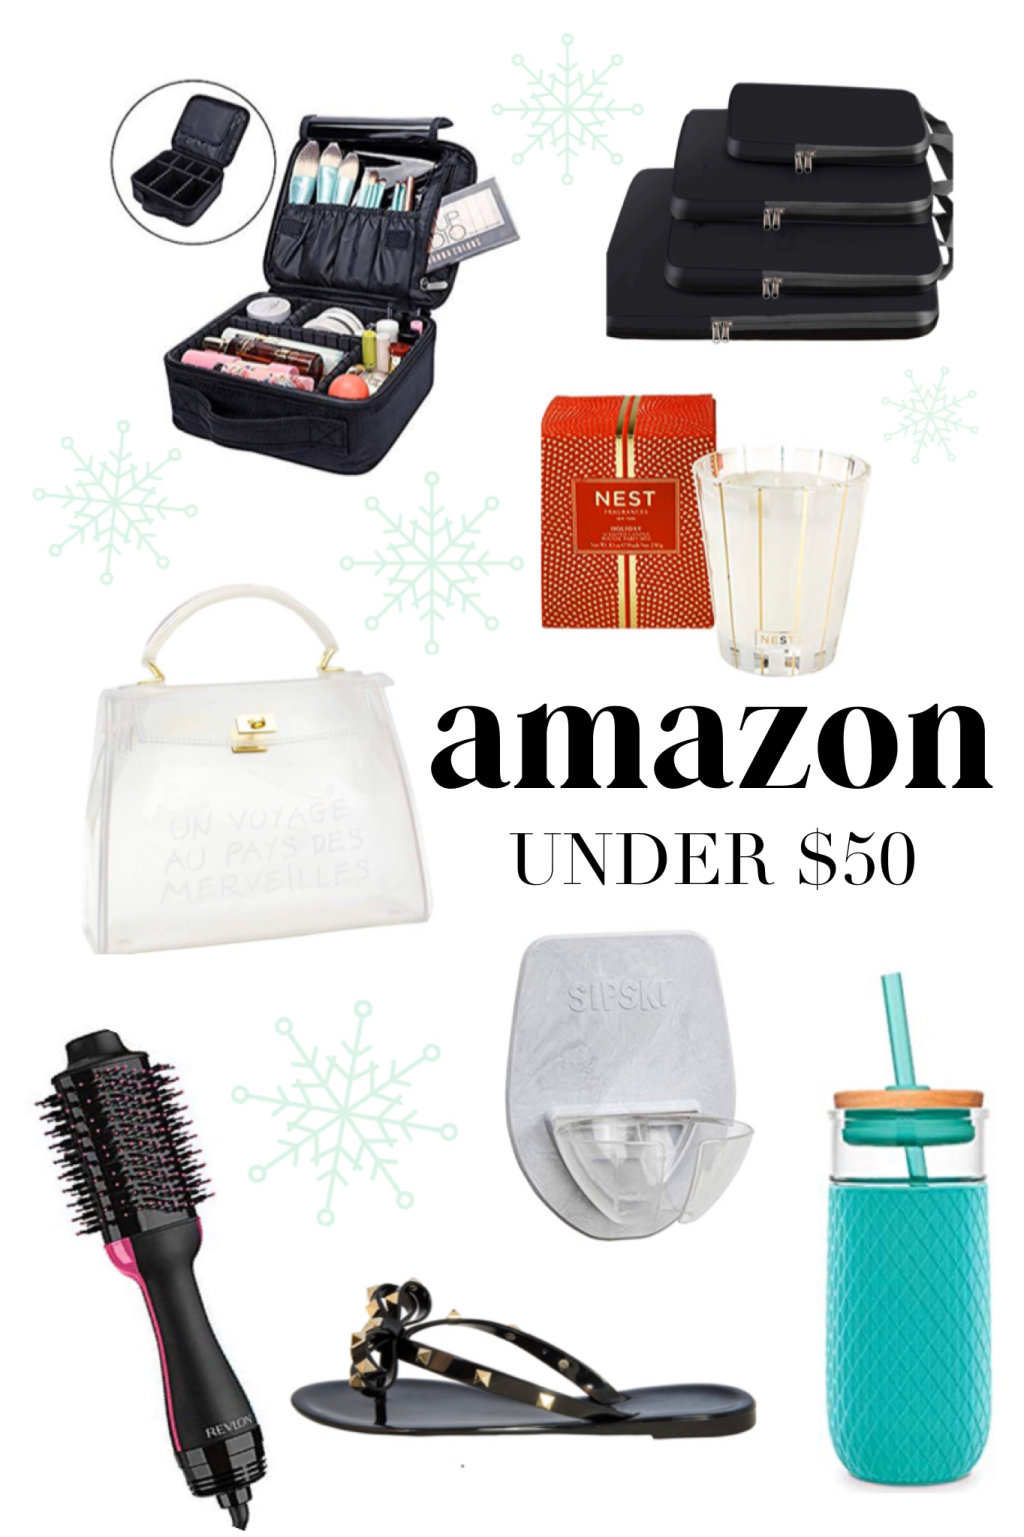 Amazon Gift Guide Under $50 + $1000 Amazon giveaway